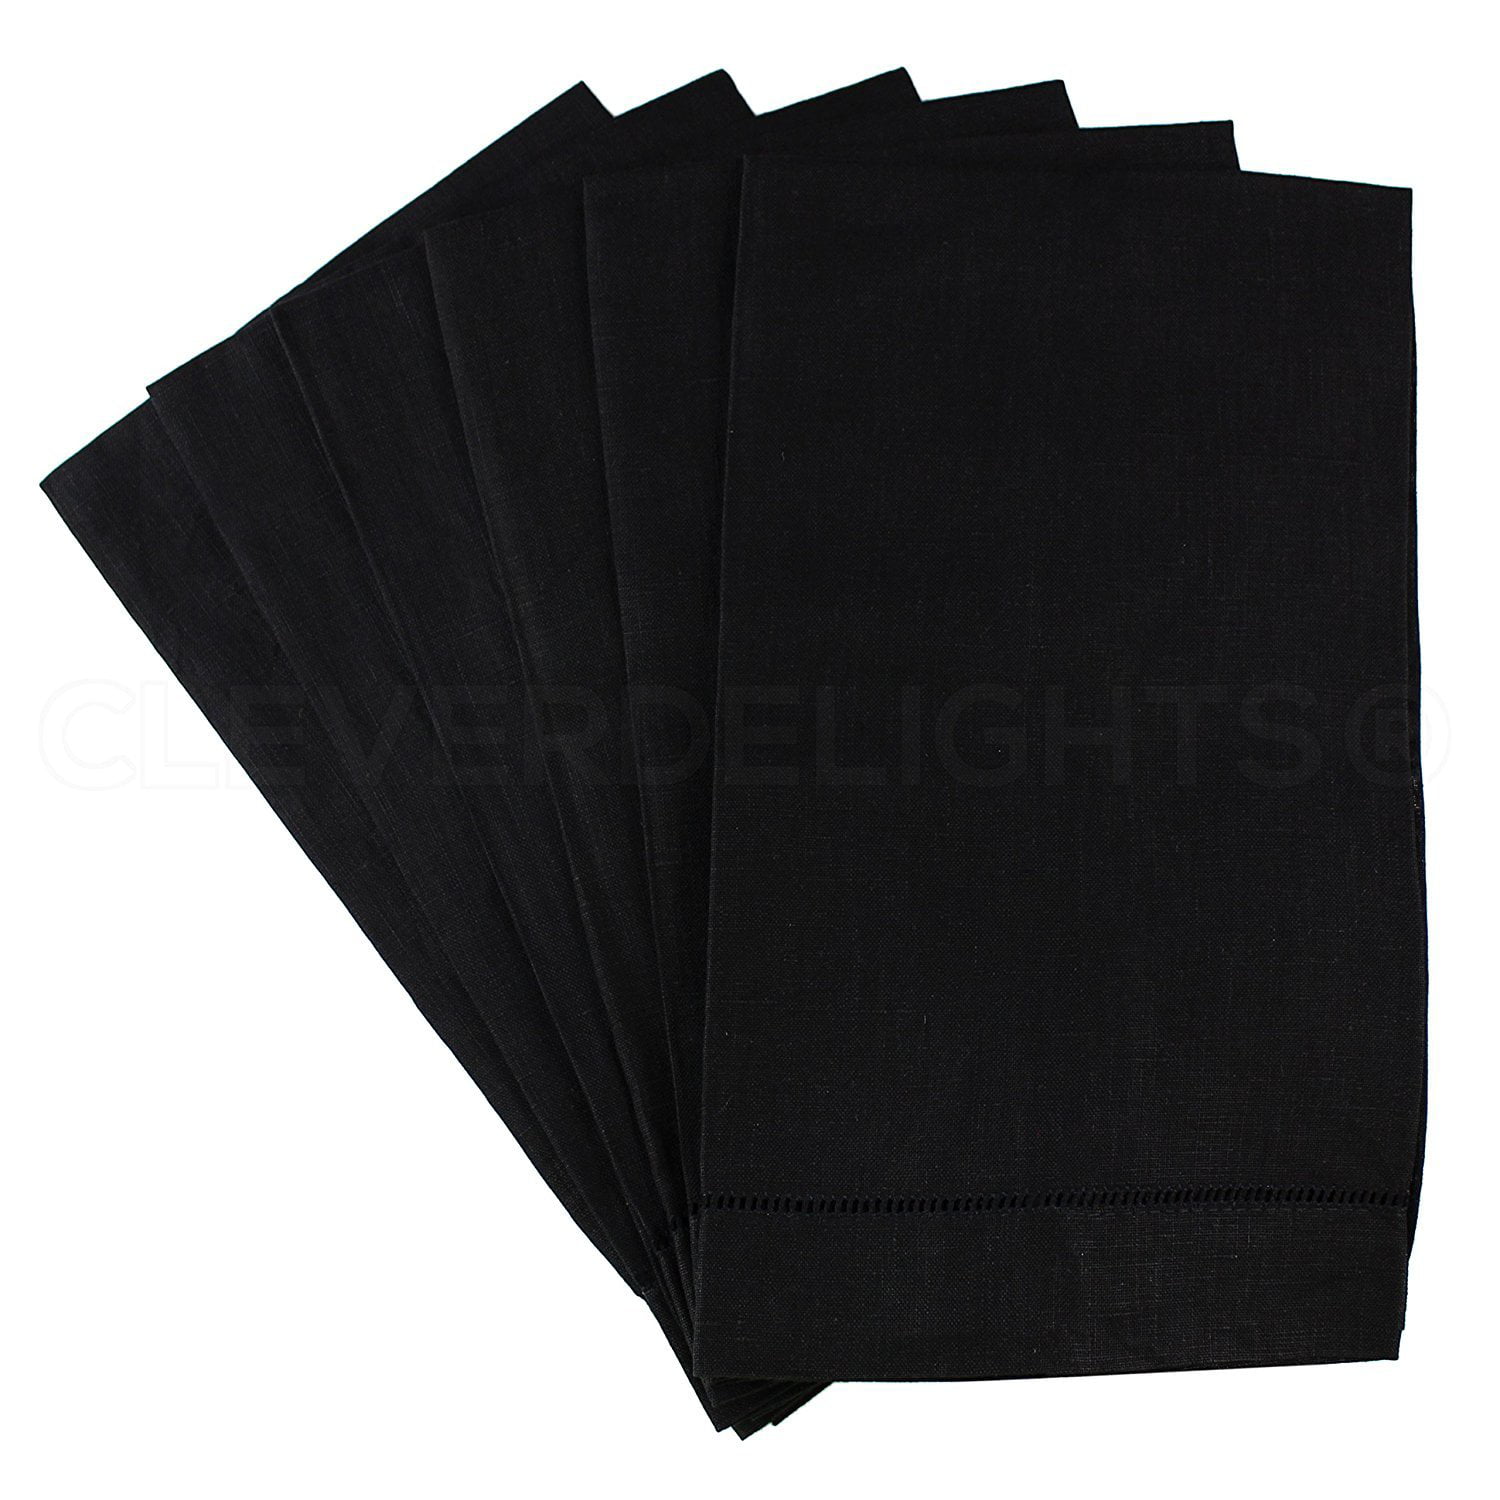 14 x 22-100% Linen CleverDelights 6 Pack Black Linen Hemstitched Hand Towels Black Tea Towels